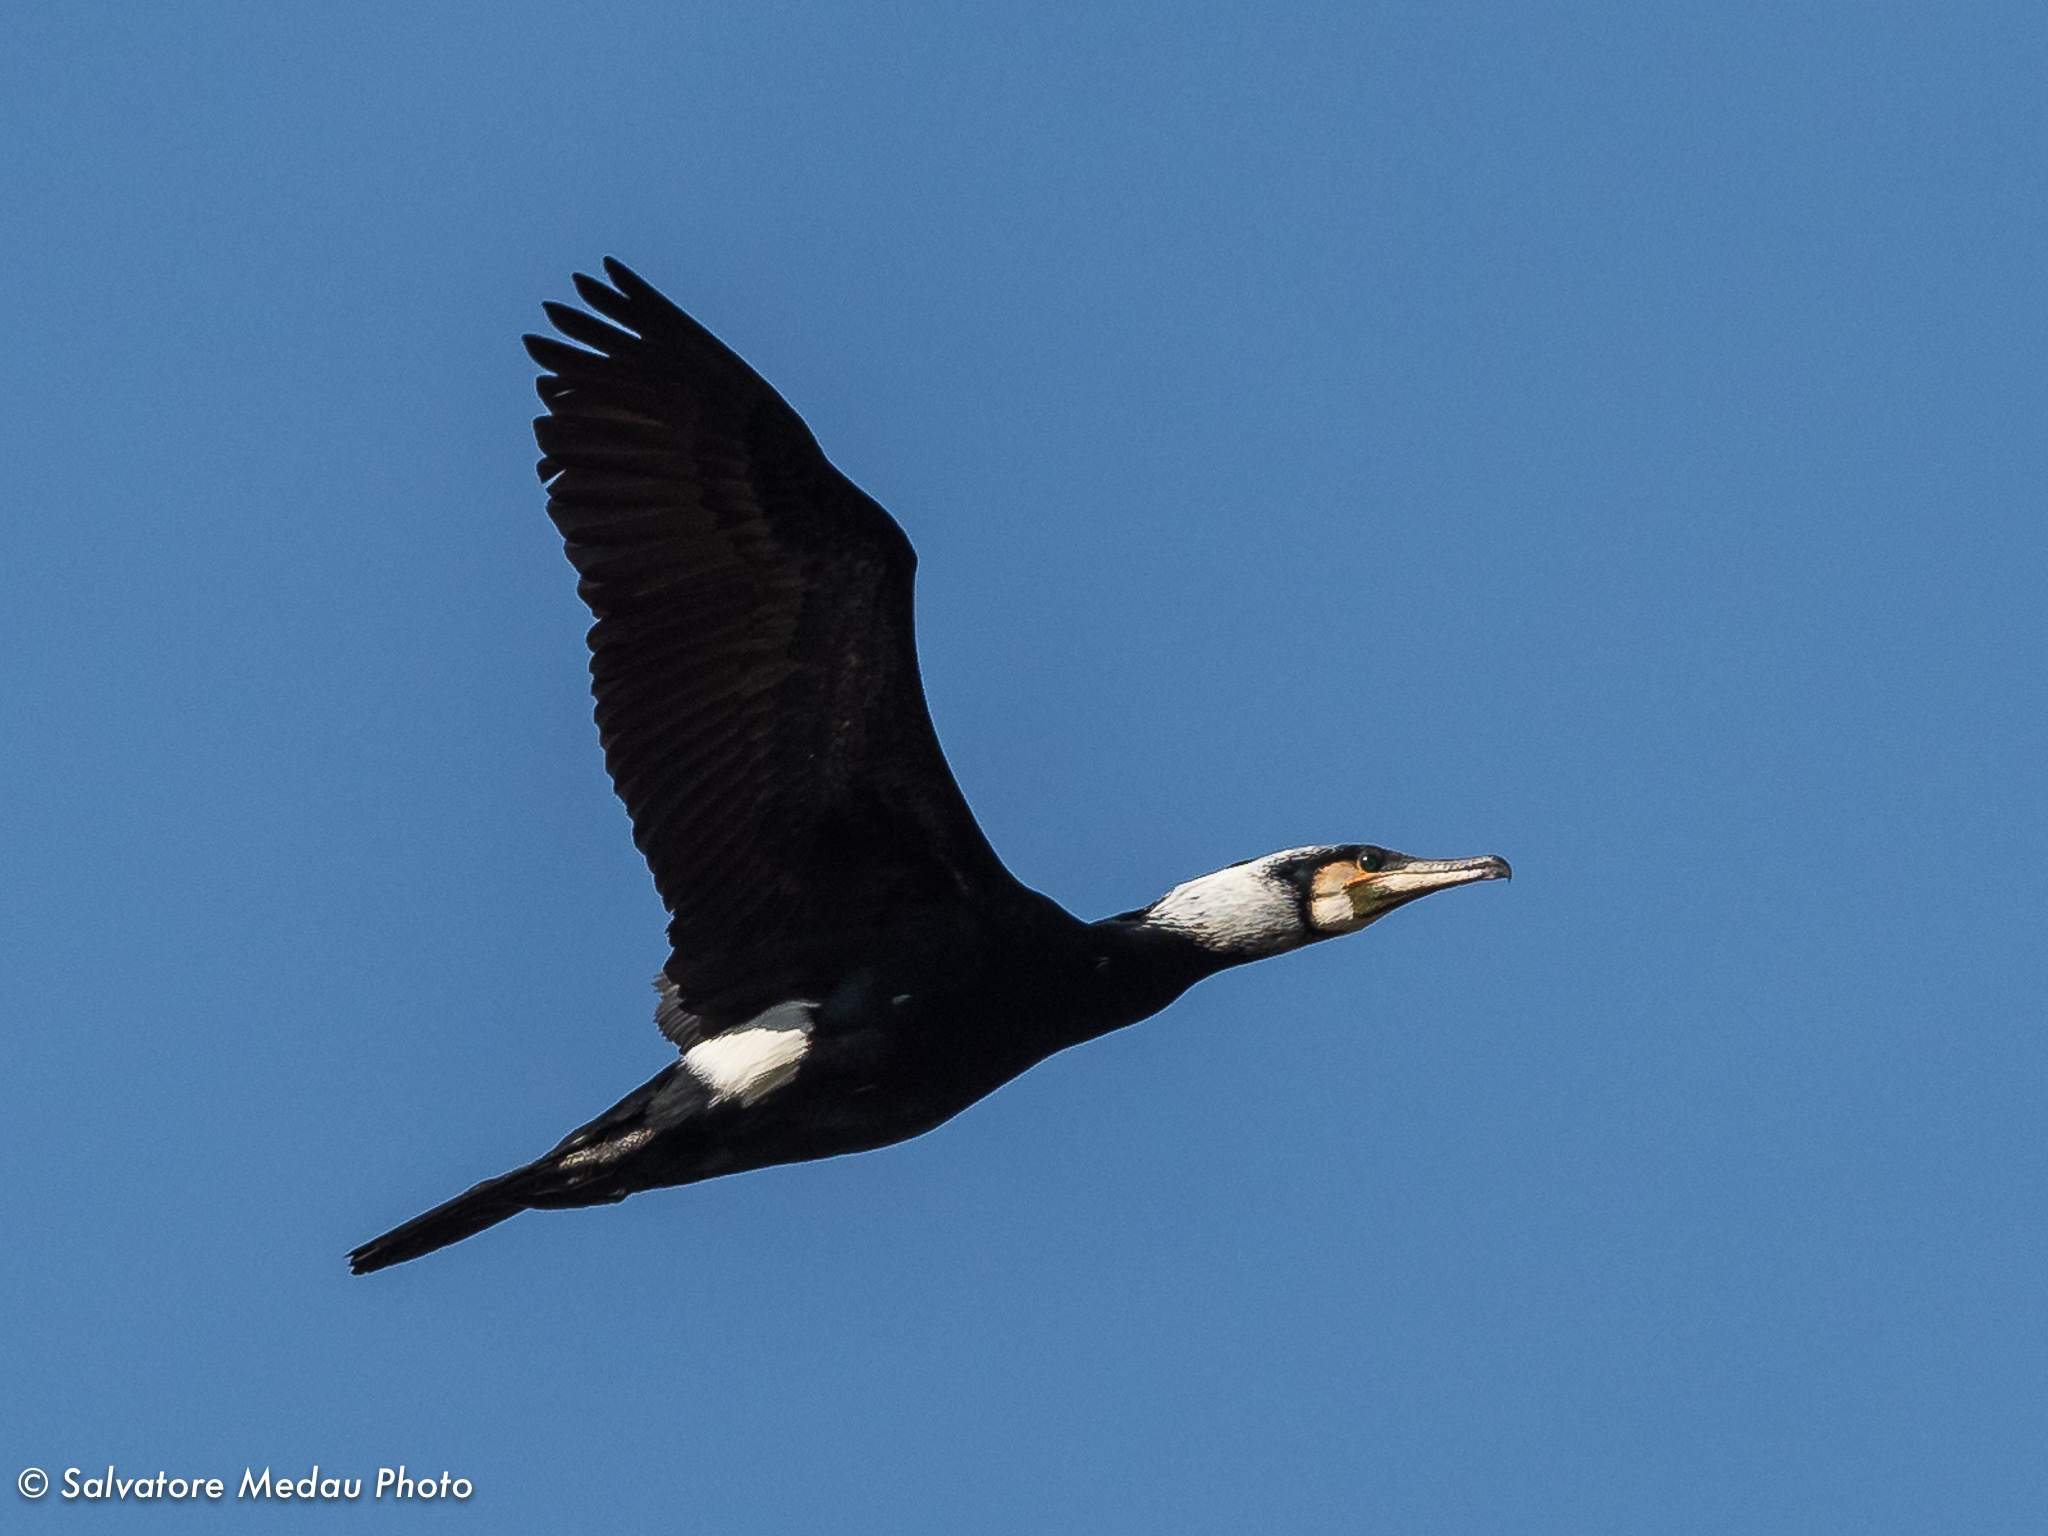 L'elegante volo del cormorano...